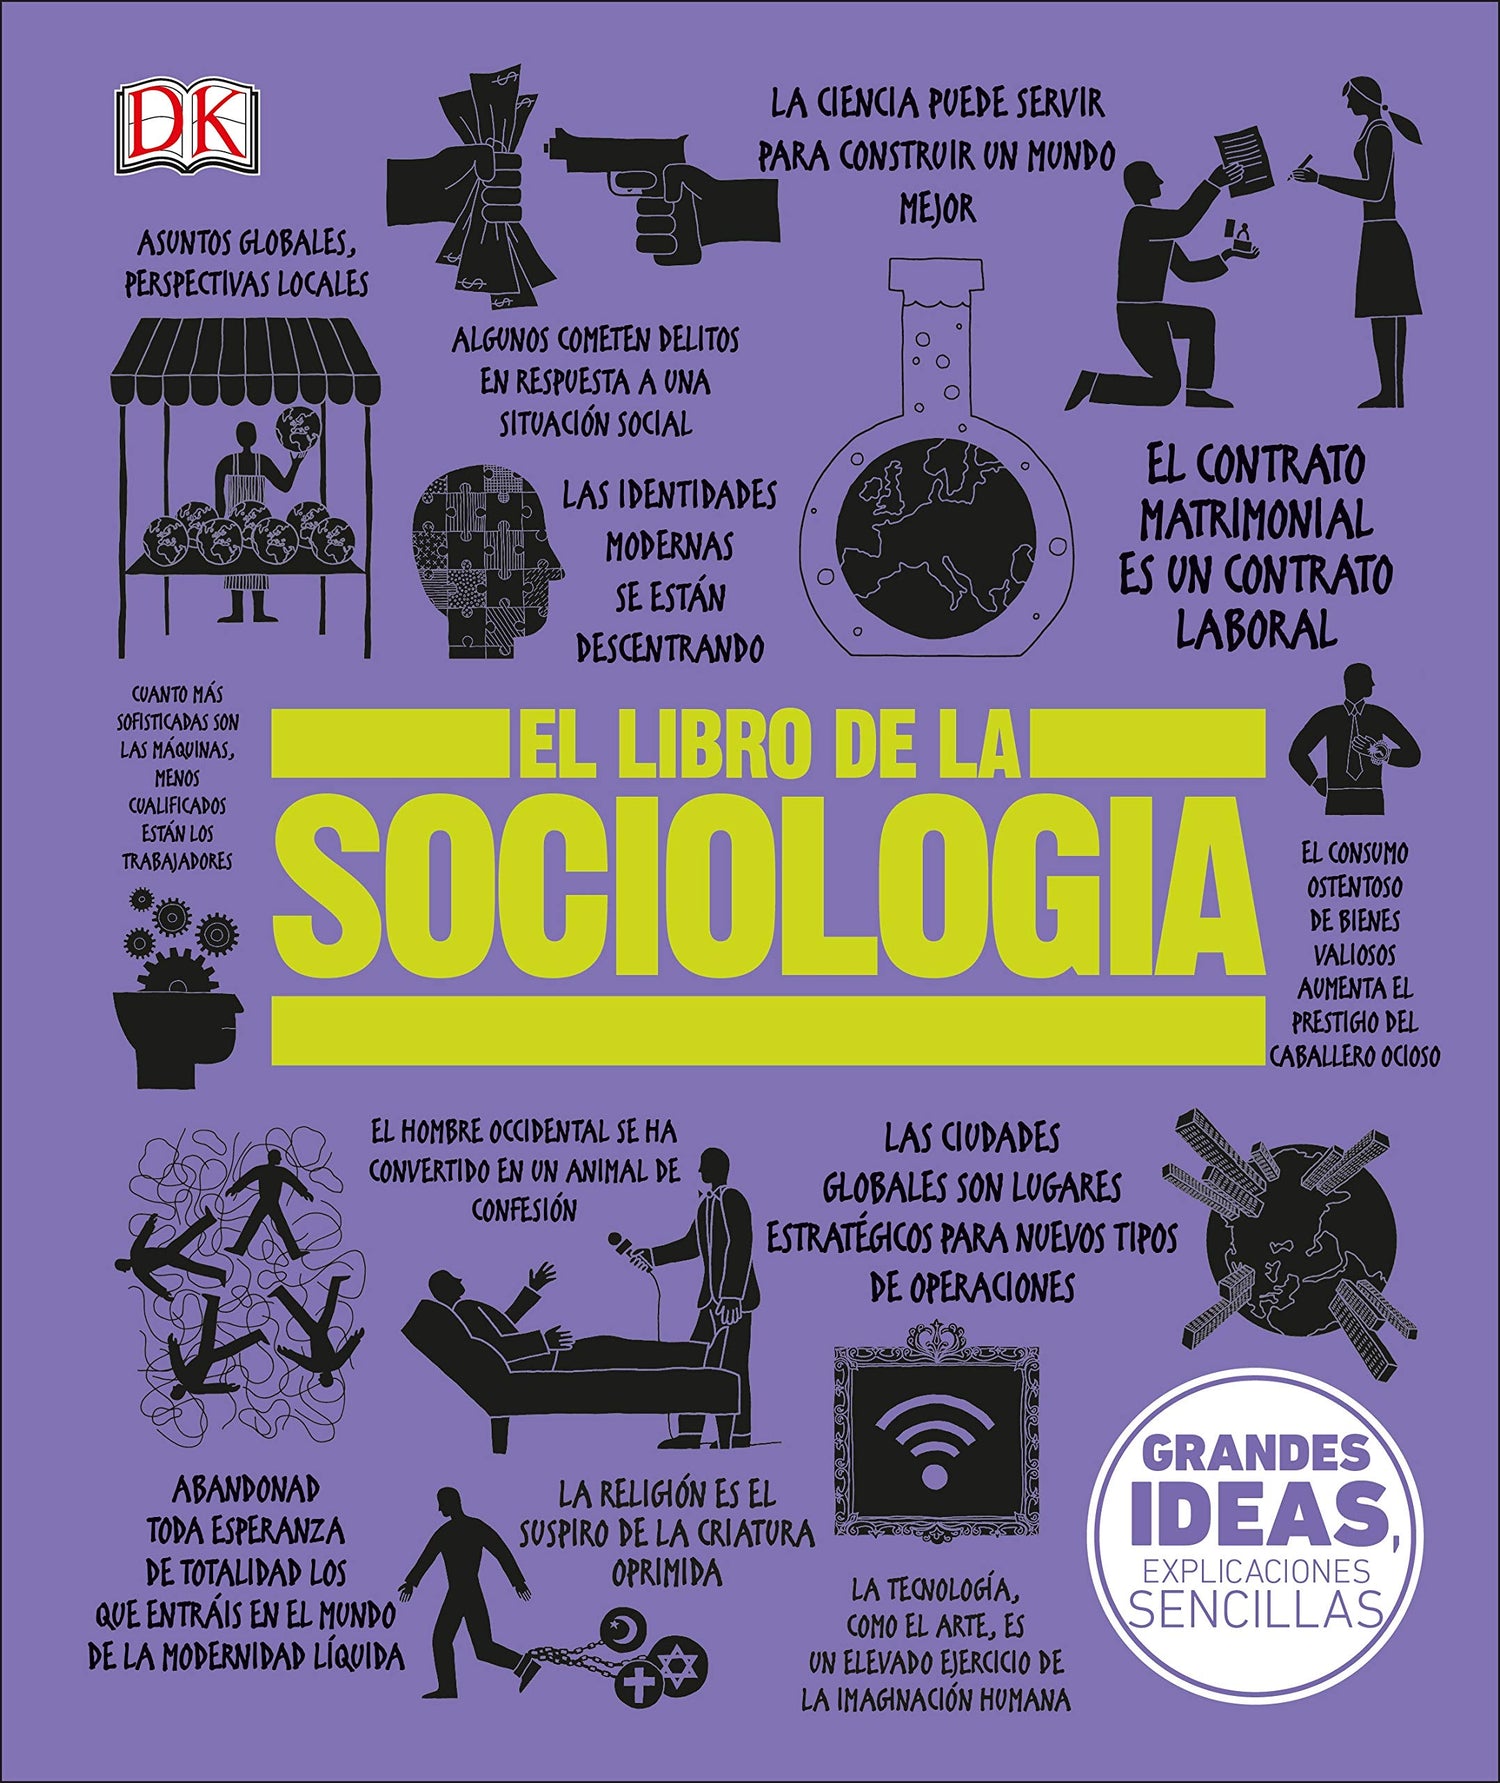 El Libro de la Sociología - DK – Tazas y Portadas